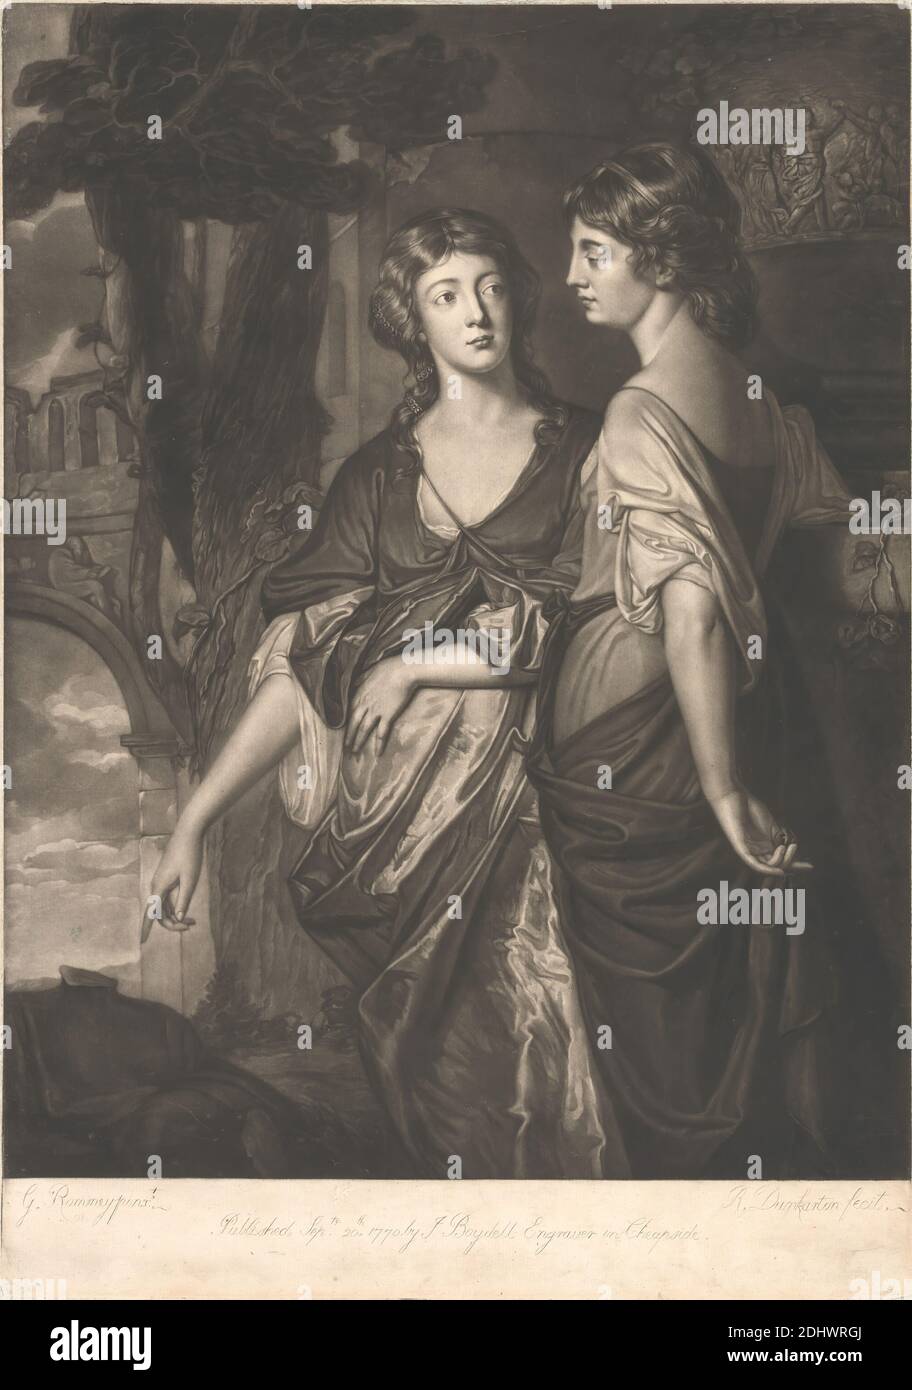 Sisters contemplating on Mortality, Print made by Robert Dunkarton, 1744–1811, British, after George Romney, 1734–1802, British, 1770, Mezzotint (First State) auf Medium, leicht strukturiert, cremefarbenes Papier, Blatt: 20 × 14 1/4 Zoll (50.8 × 36.2 cm), Platte: 19 7/8 × 14 Zoll (50.5 × 35.6 cm), und Bild: 18 × 14 Zoll (45.7 × 35.6 cm), Bogen, Wolken, Kontemplation, Kleider, Reliefskulptur, Sterblichkeit, Aussterben des Lebens, Zeigen, religiöses und mythologisches Thema, Ruinen, Seide (Textil), Röcke, Himmel, stehend, Statue, Baum, Reben, Frauen Stockfoto